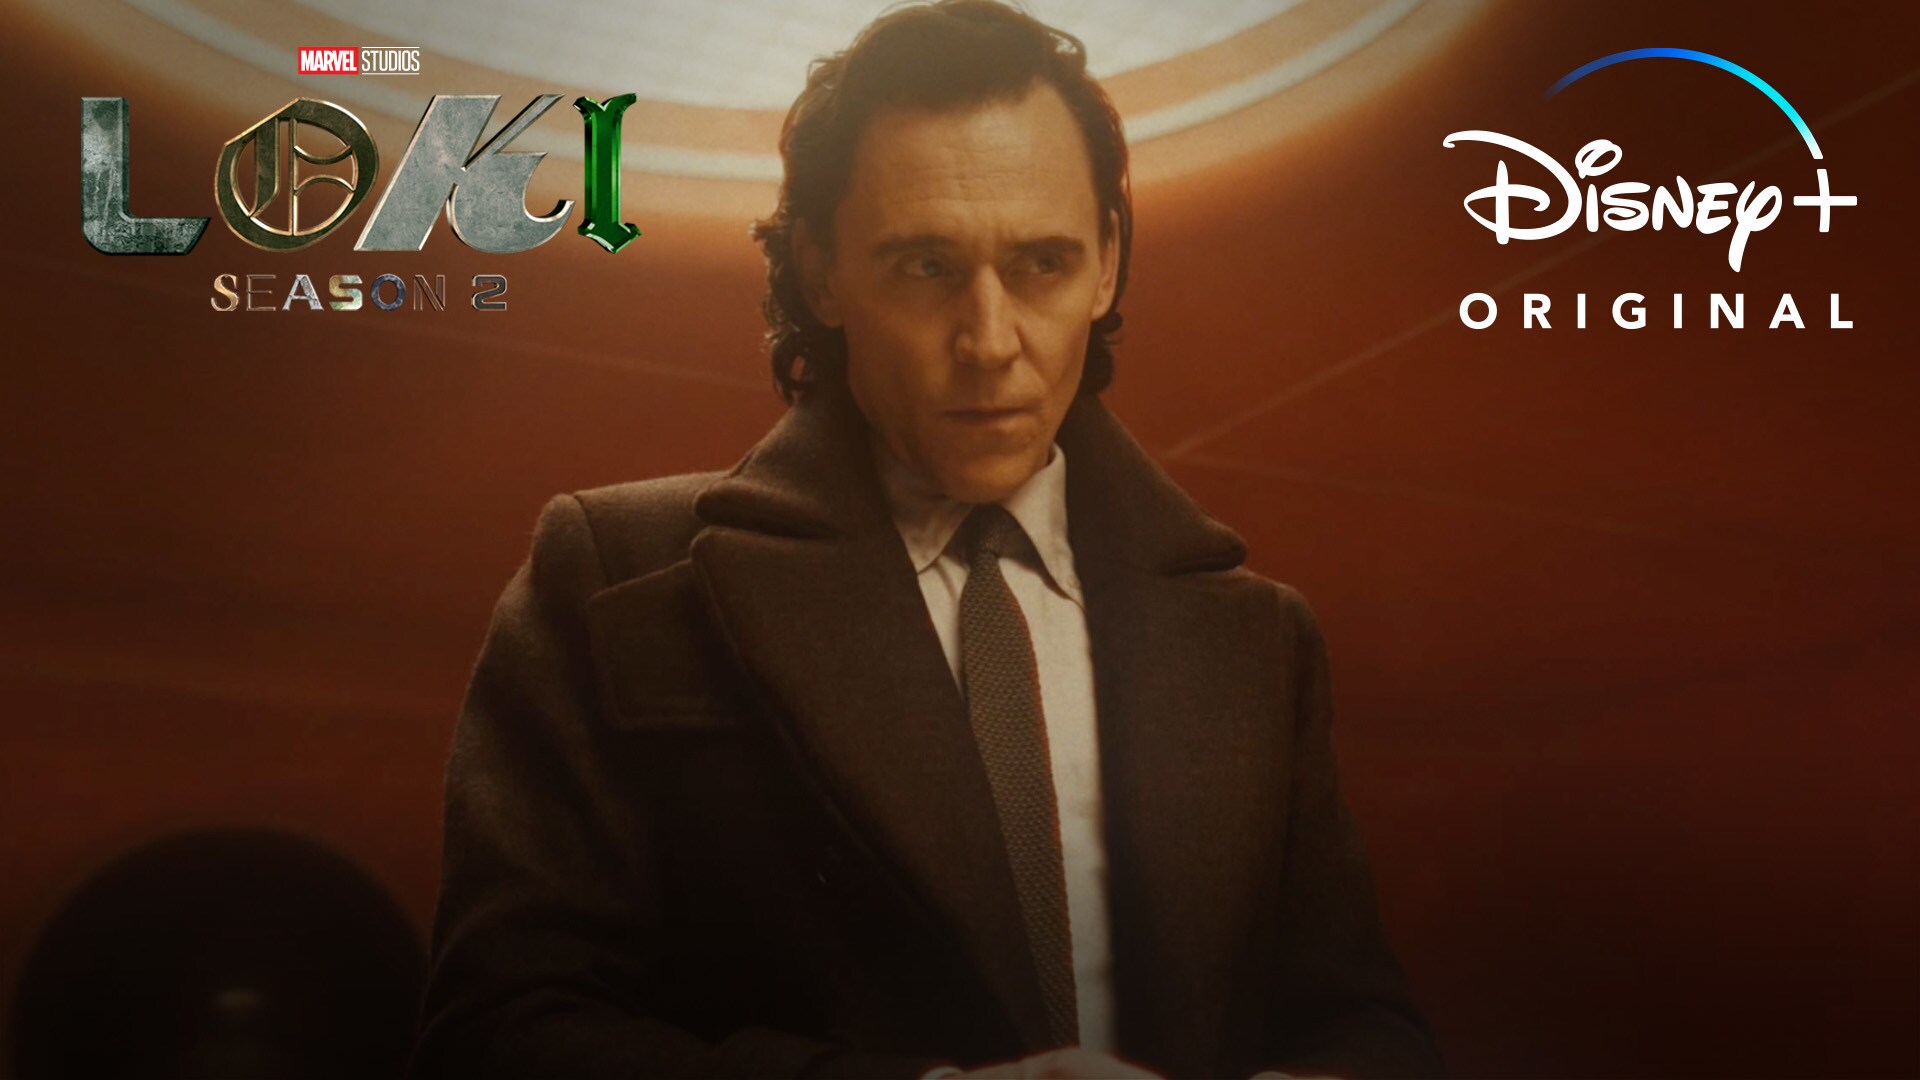 Marvel Studios’ Loki Season 2 | Streaming in 1 Week